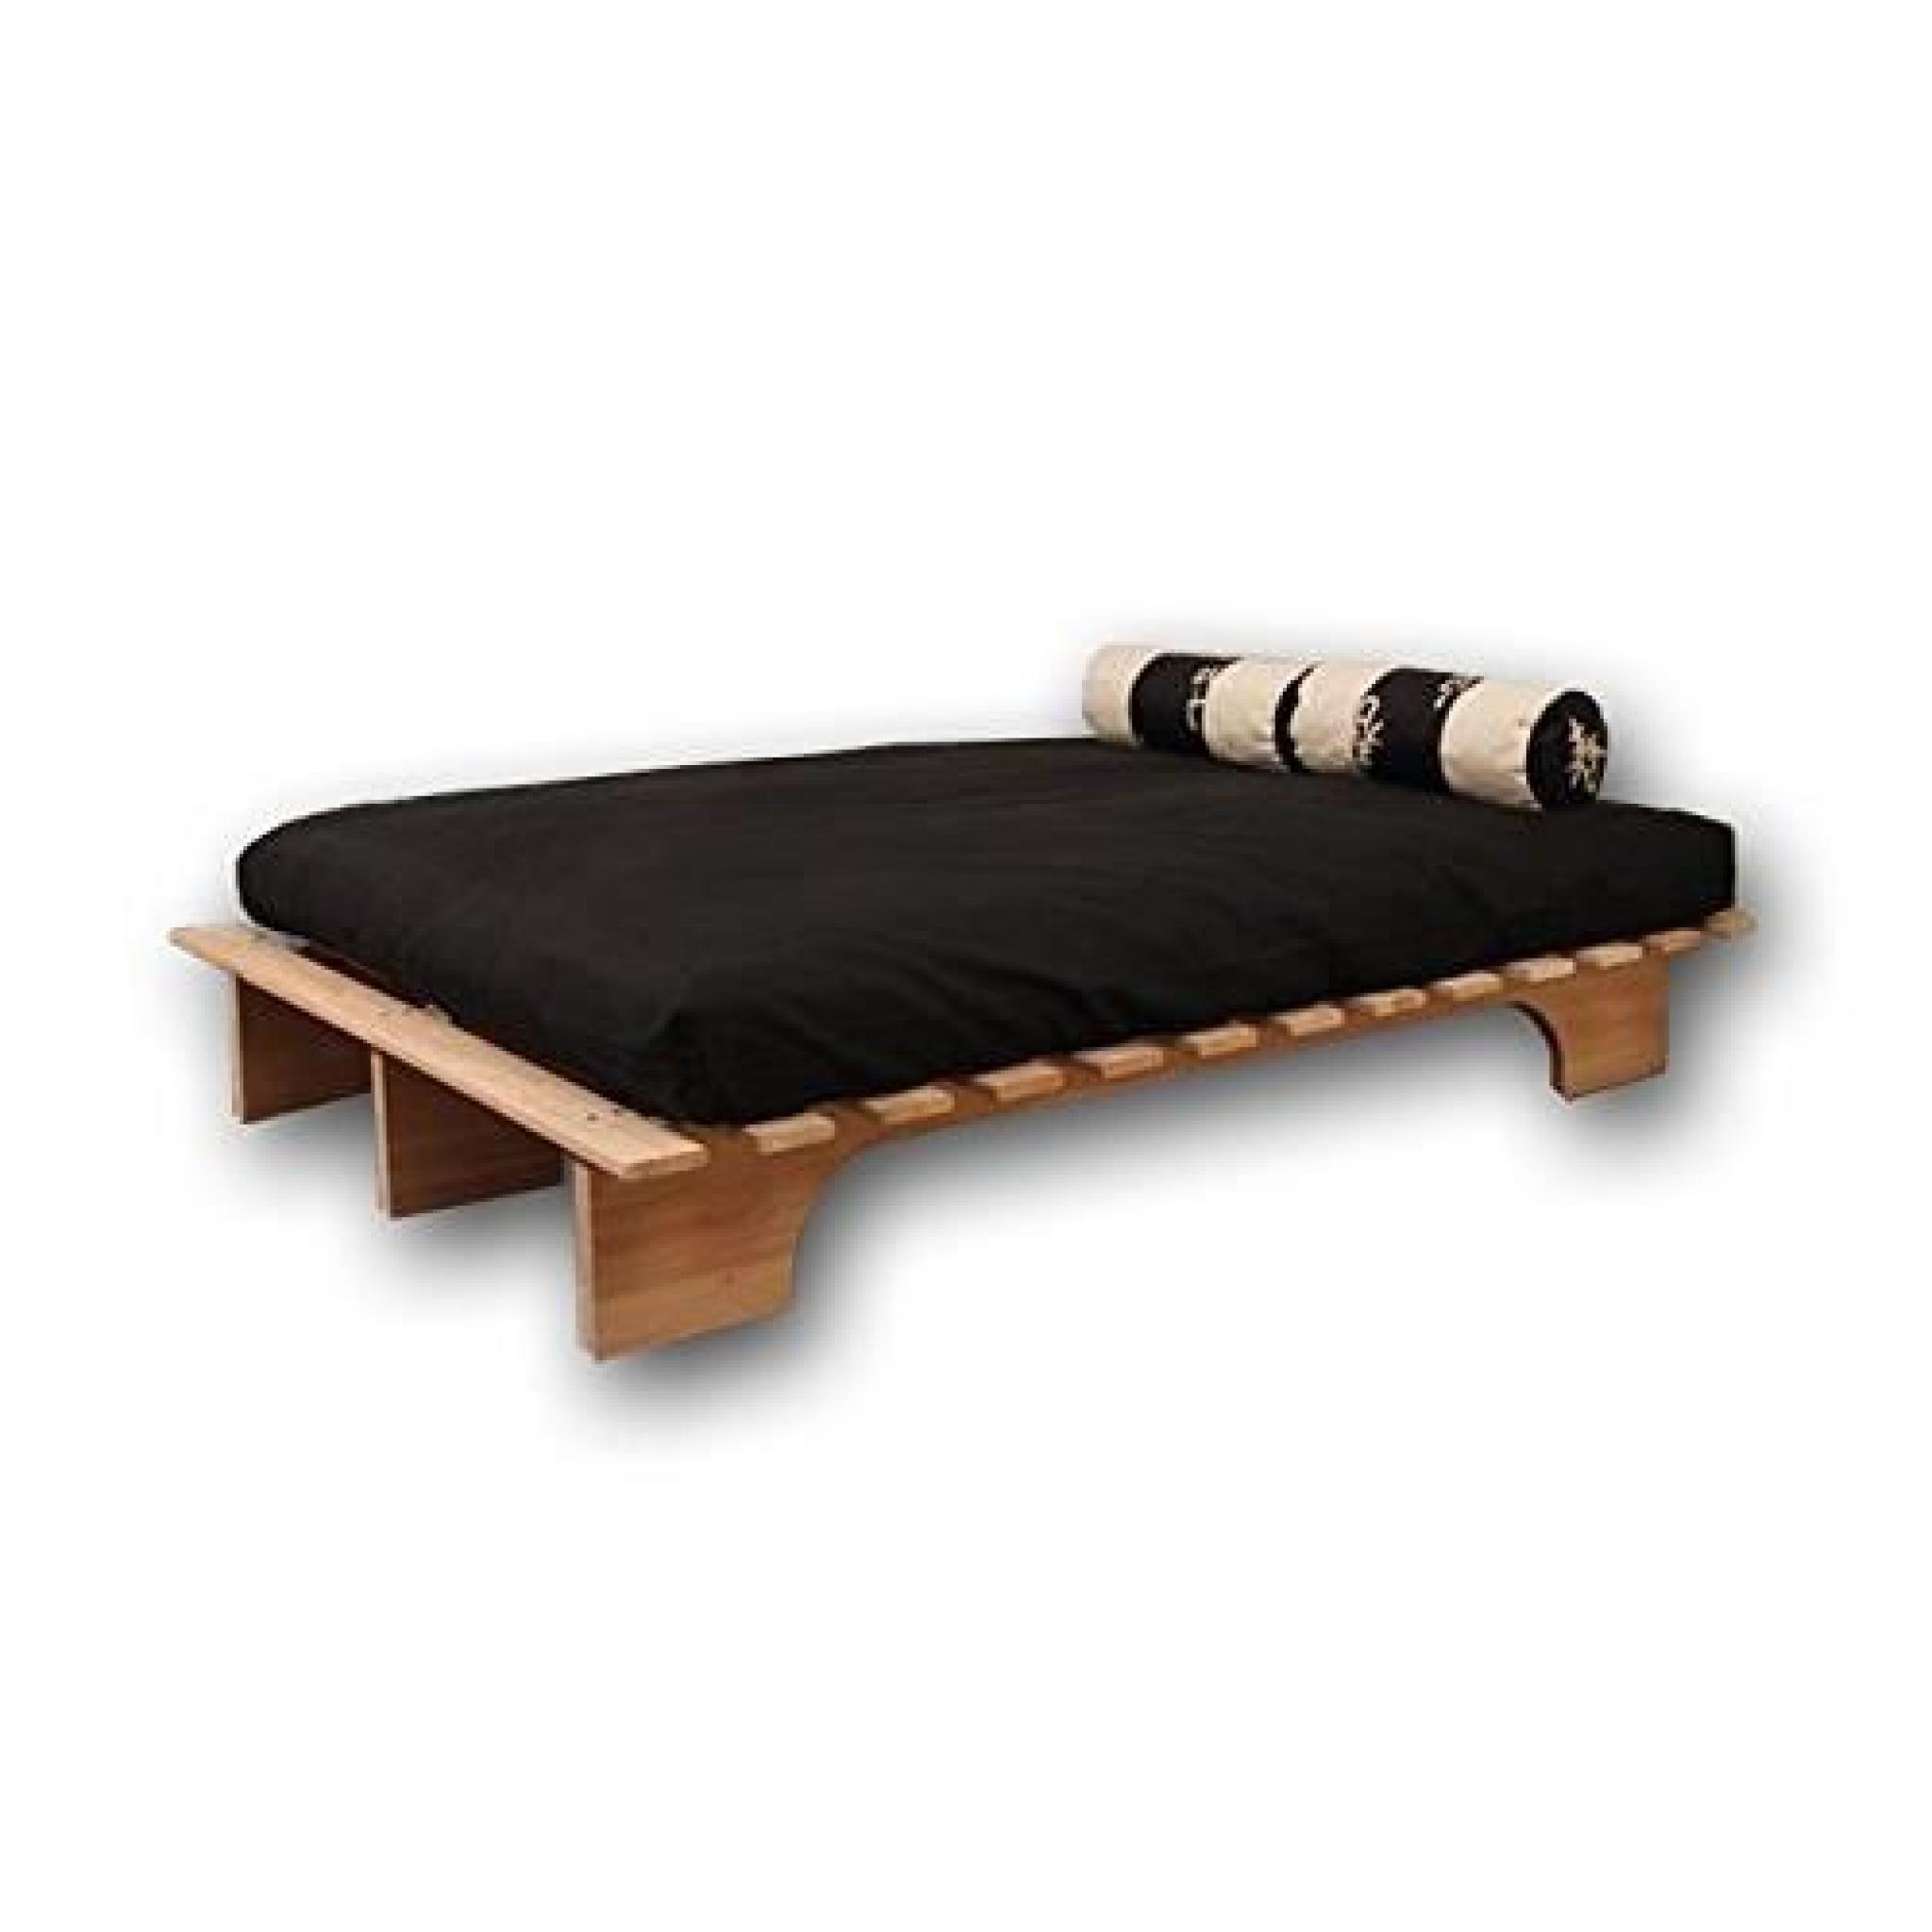 Lit Modèle Éco-bed fabriqué en bois massif d’Hévéa, écologique, prix imbattable. Idéal pour utiliser avec futon en coton ou latex...